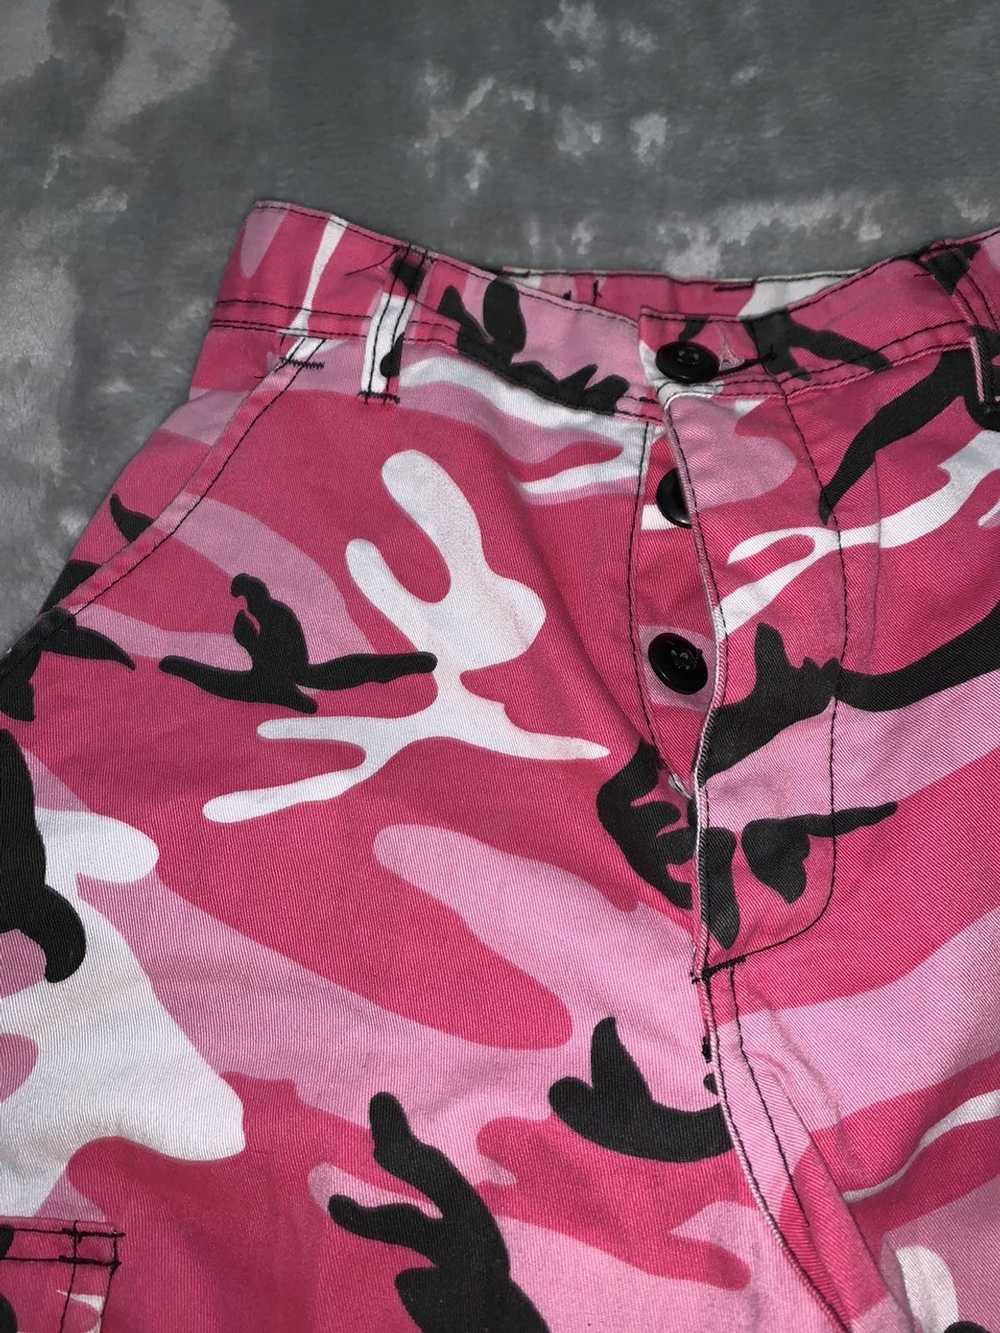 Rothco Pink Camo Utility Pants - image 4